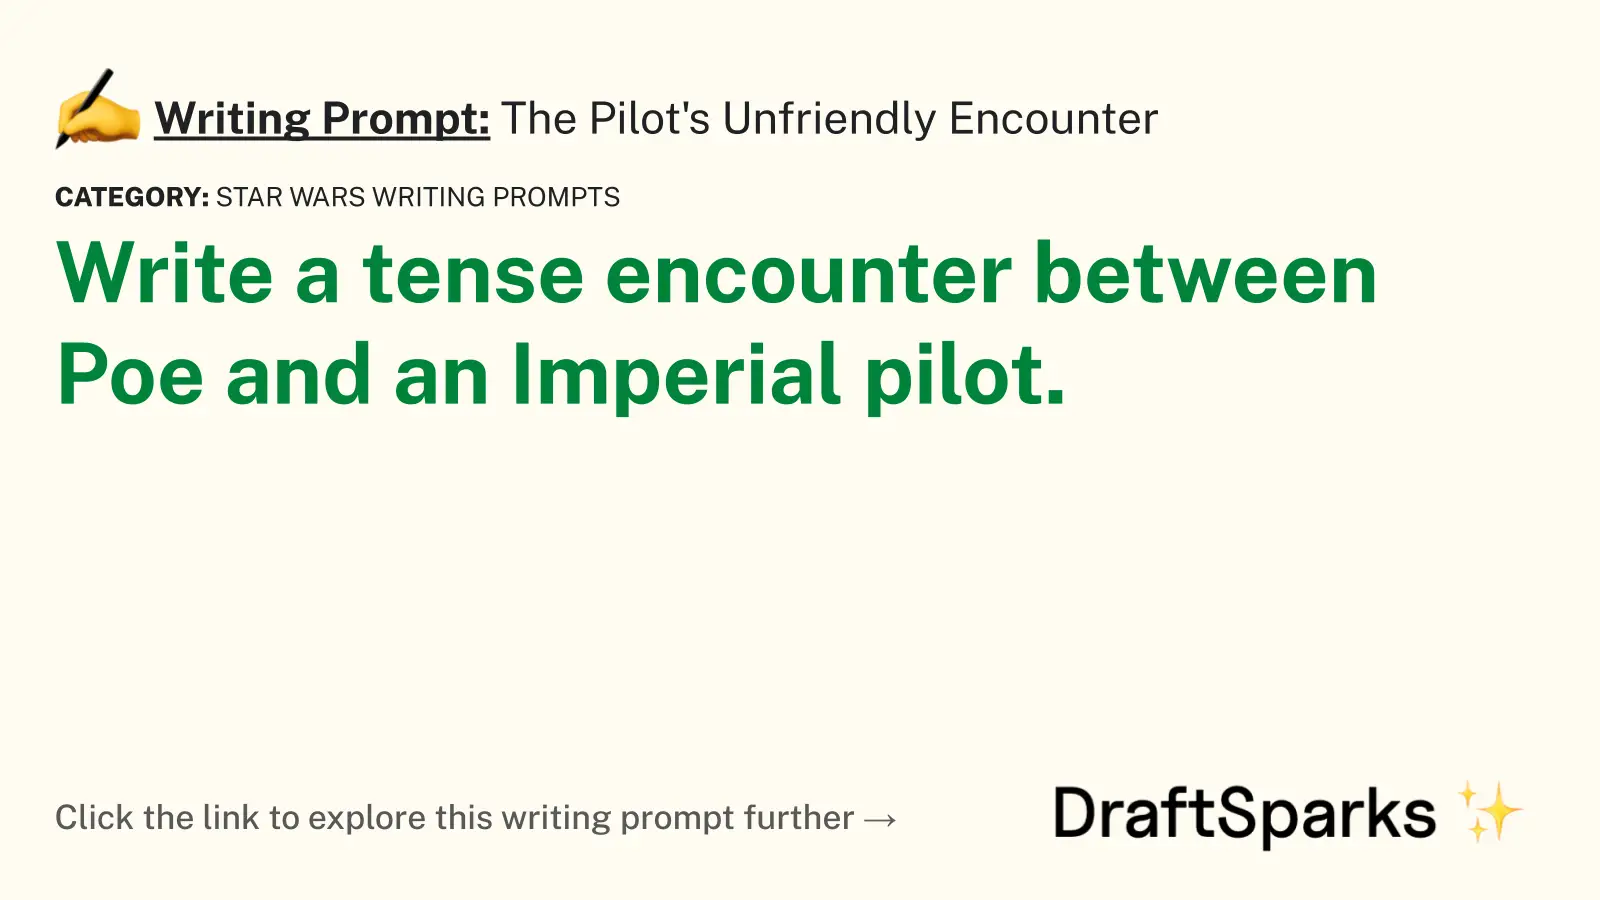 The Pilot’s Unfriendly Encounter